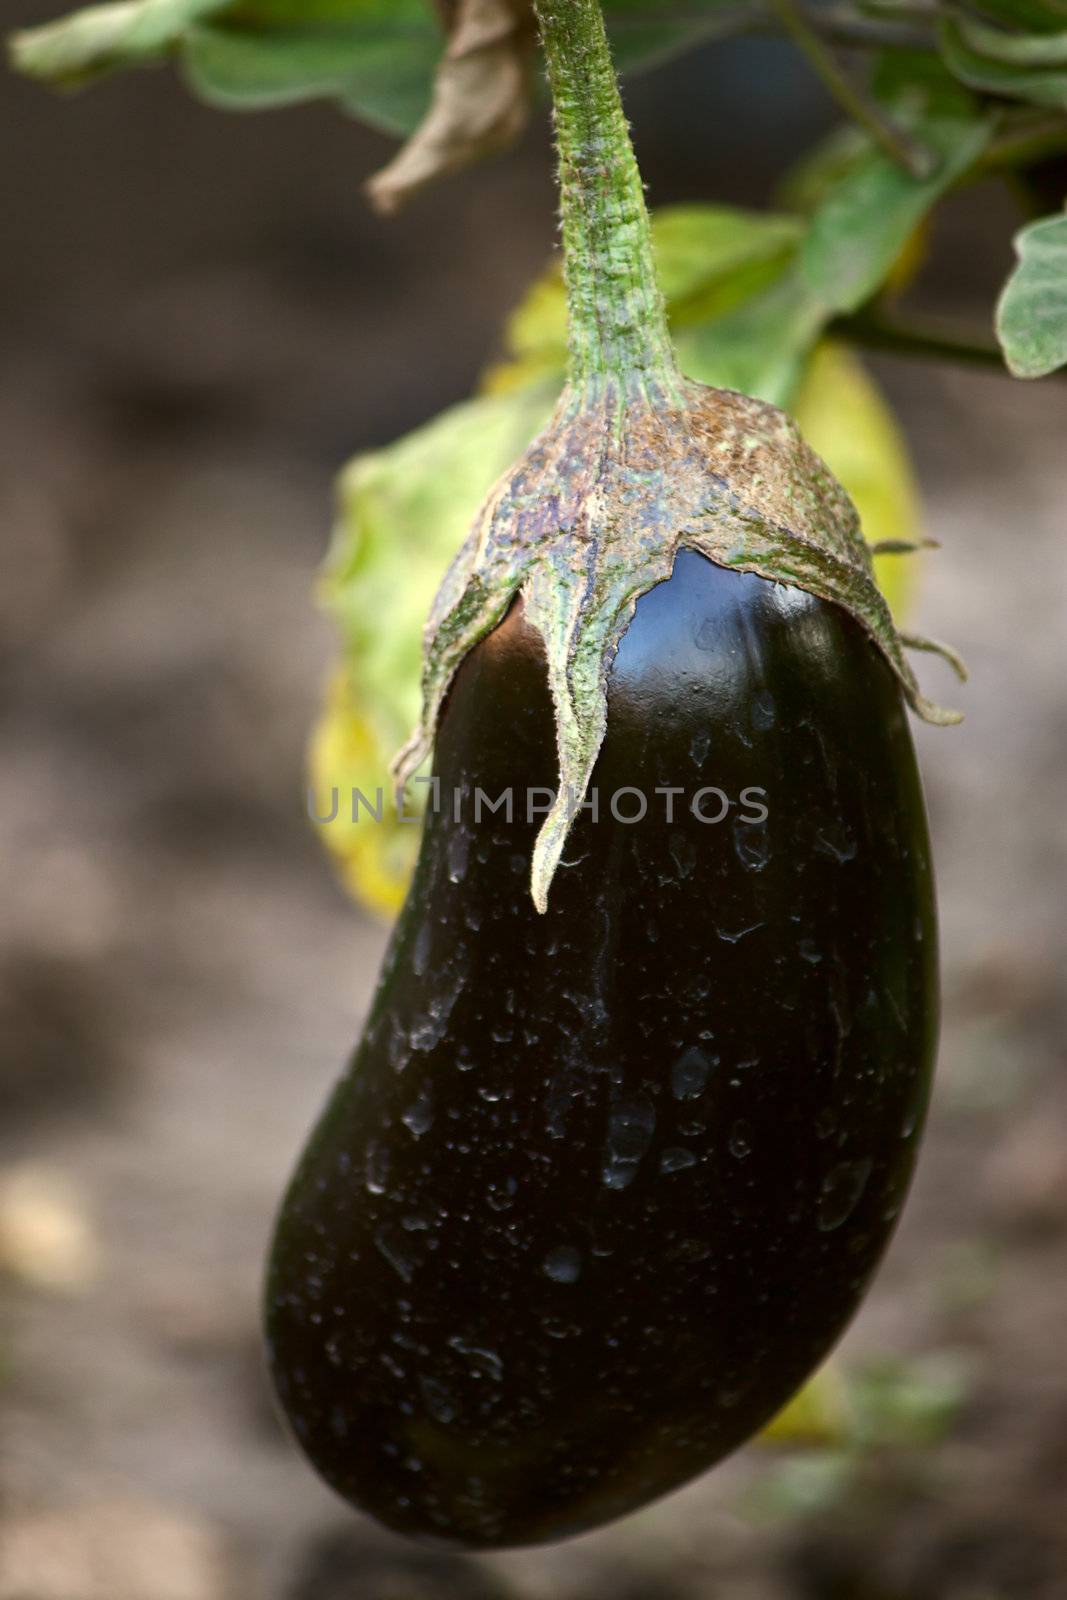 Large  fruit of eggplant on  plant close up.